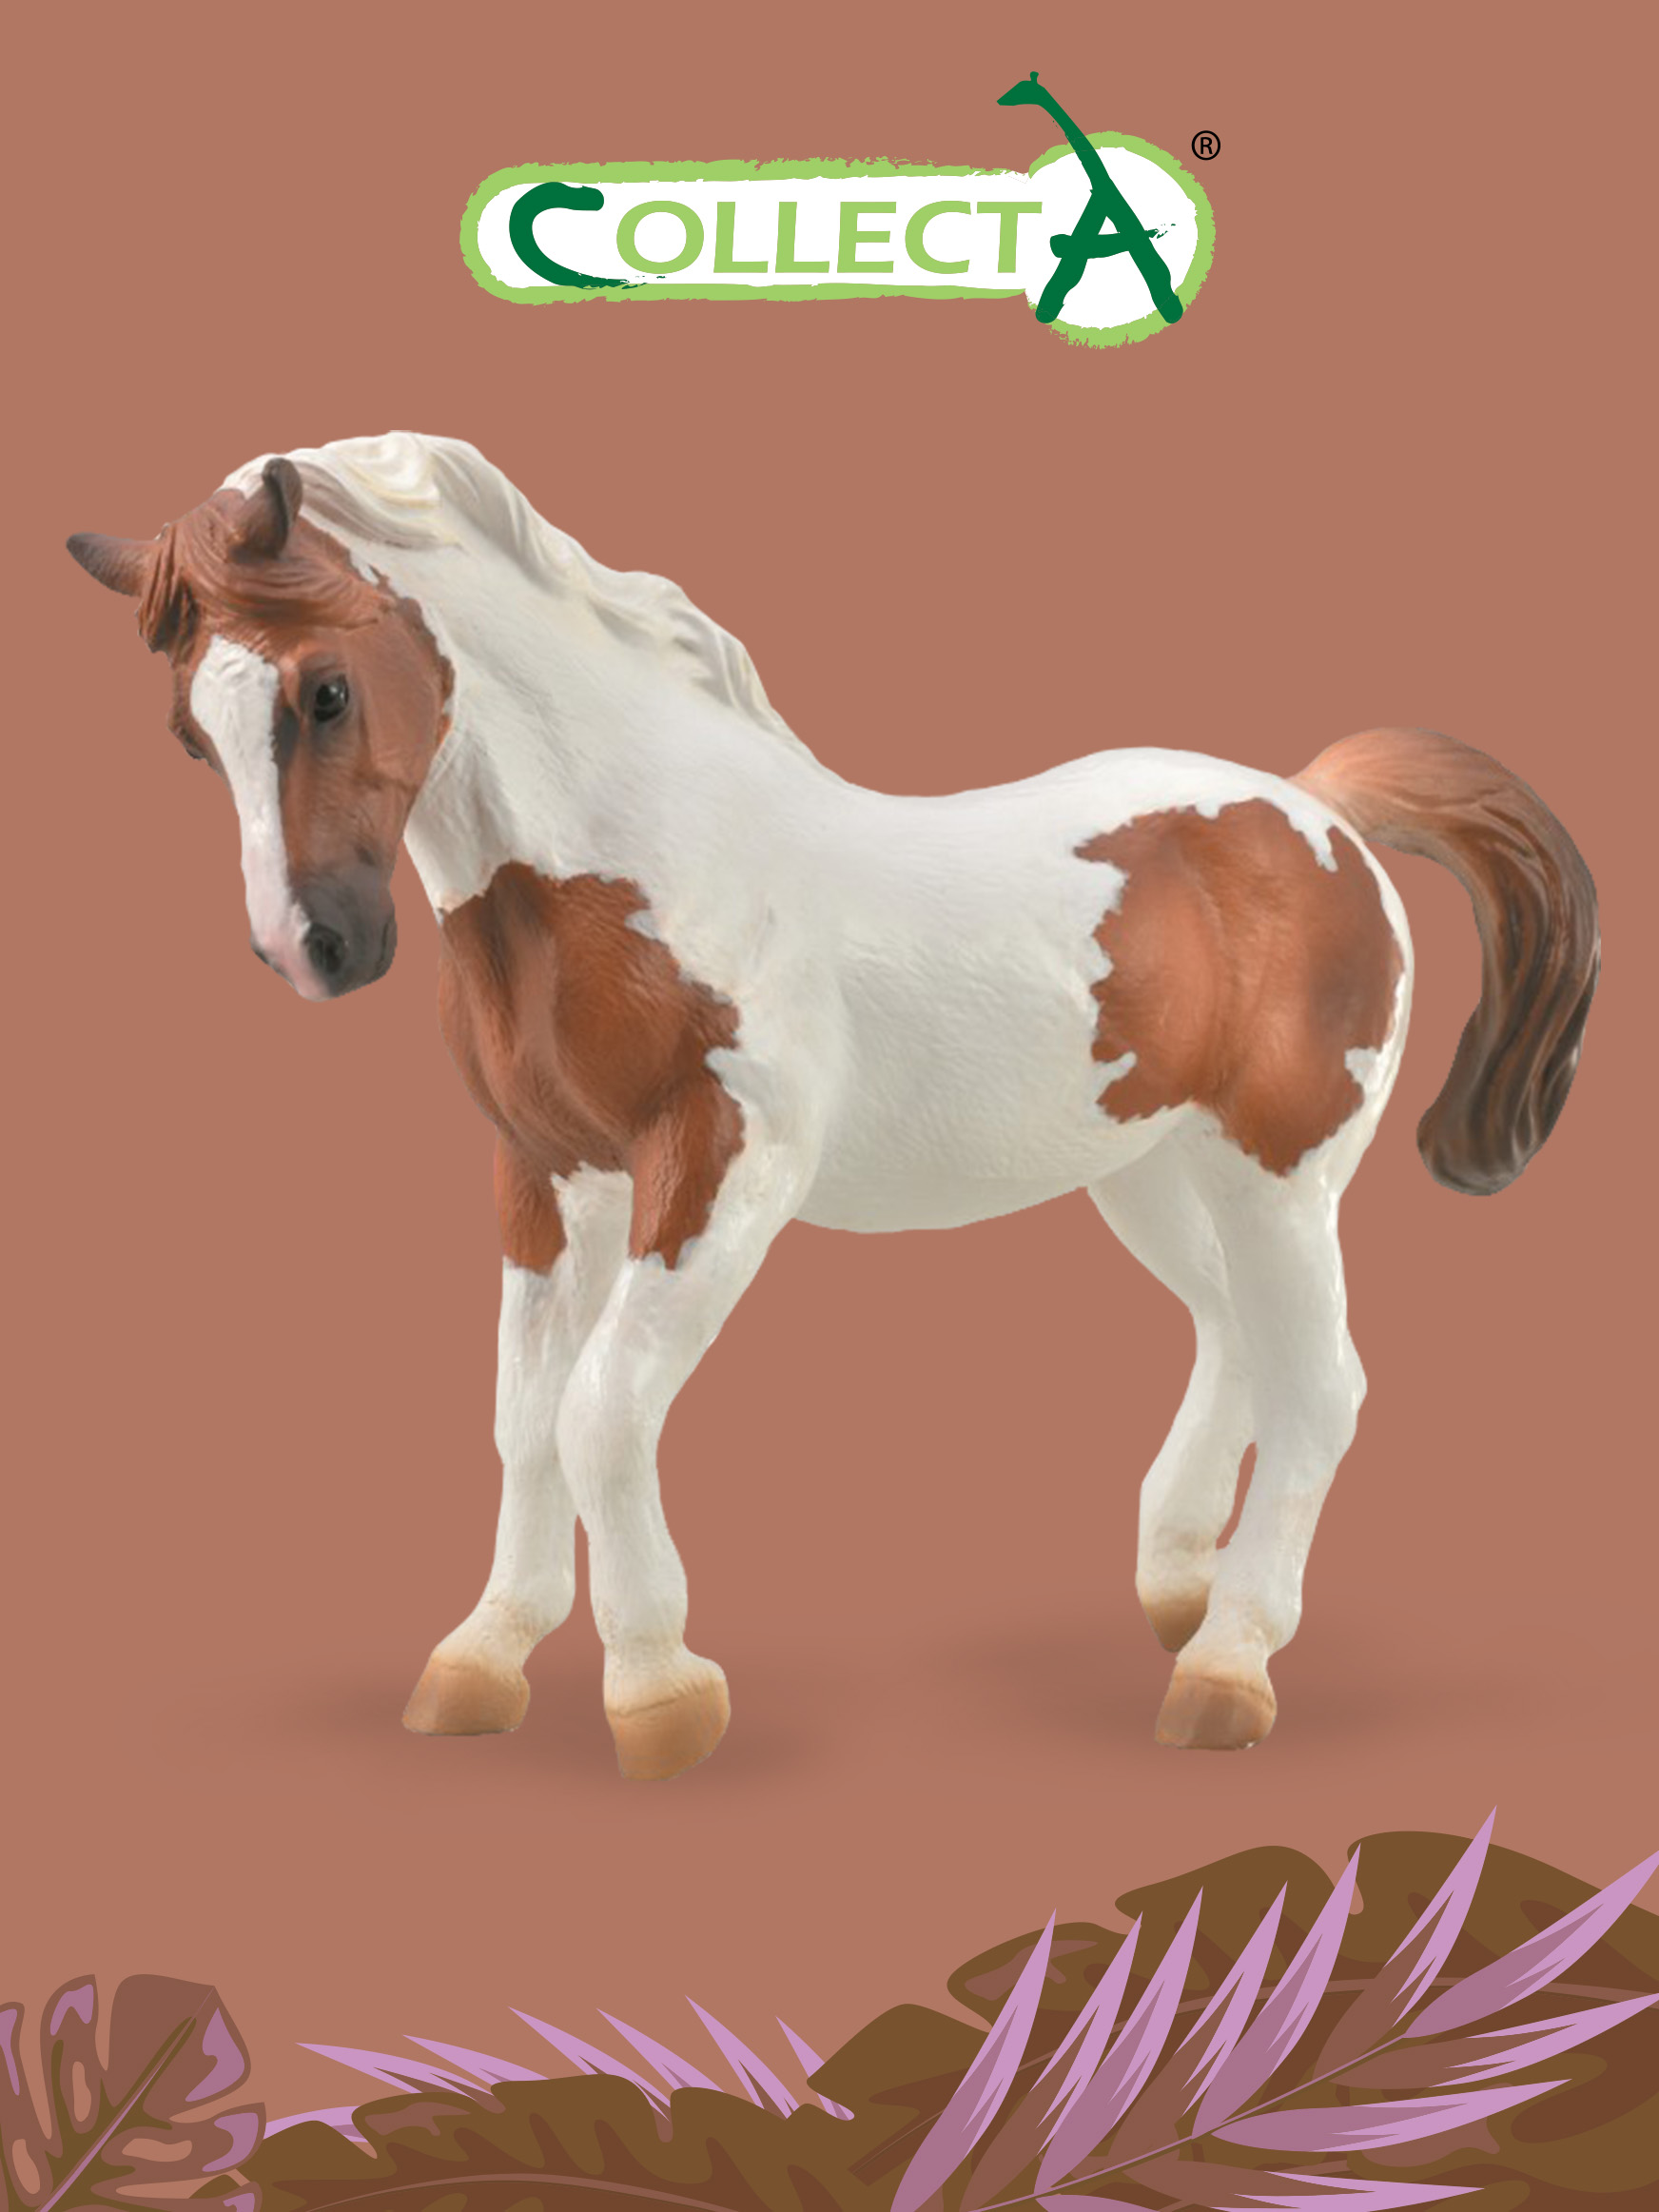 Фигурка Collecta животного Лошадь Чинкотигский пони collecta фигурка американская кремовая лошадь xl